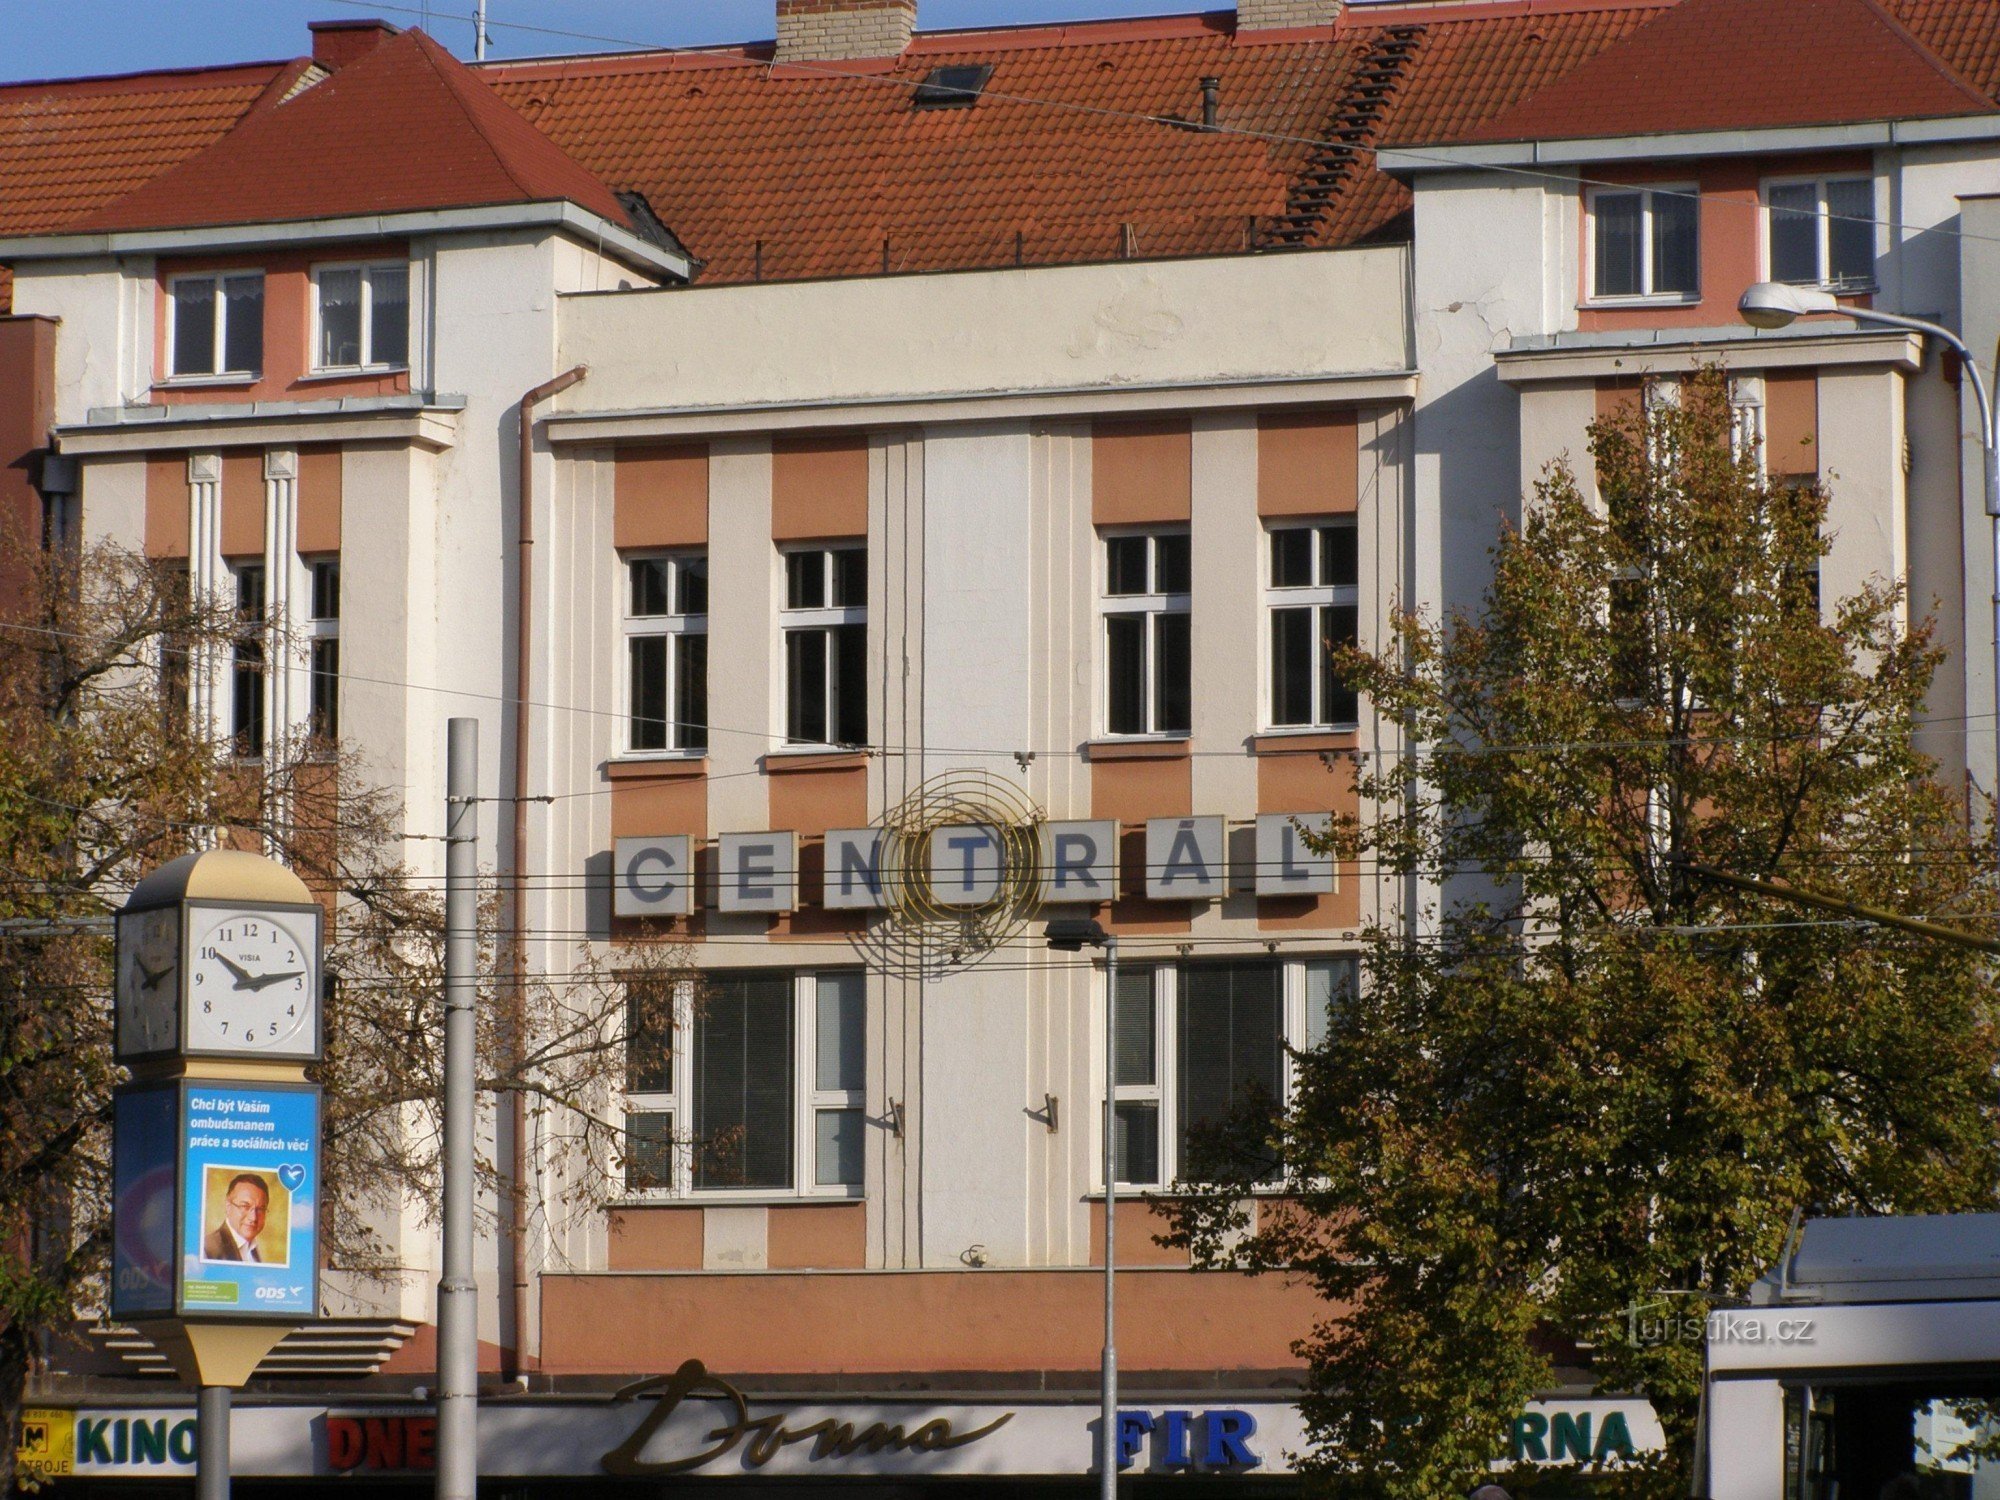 Hradec Králové - kino Central